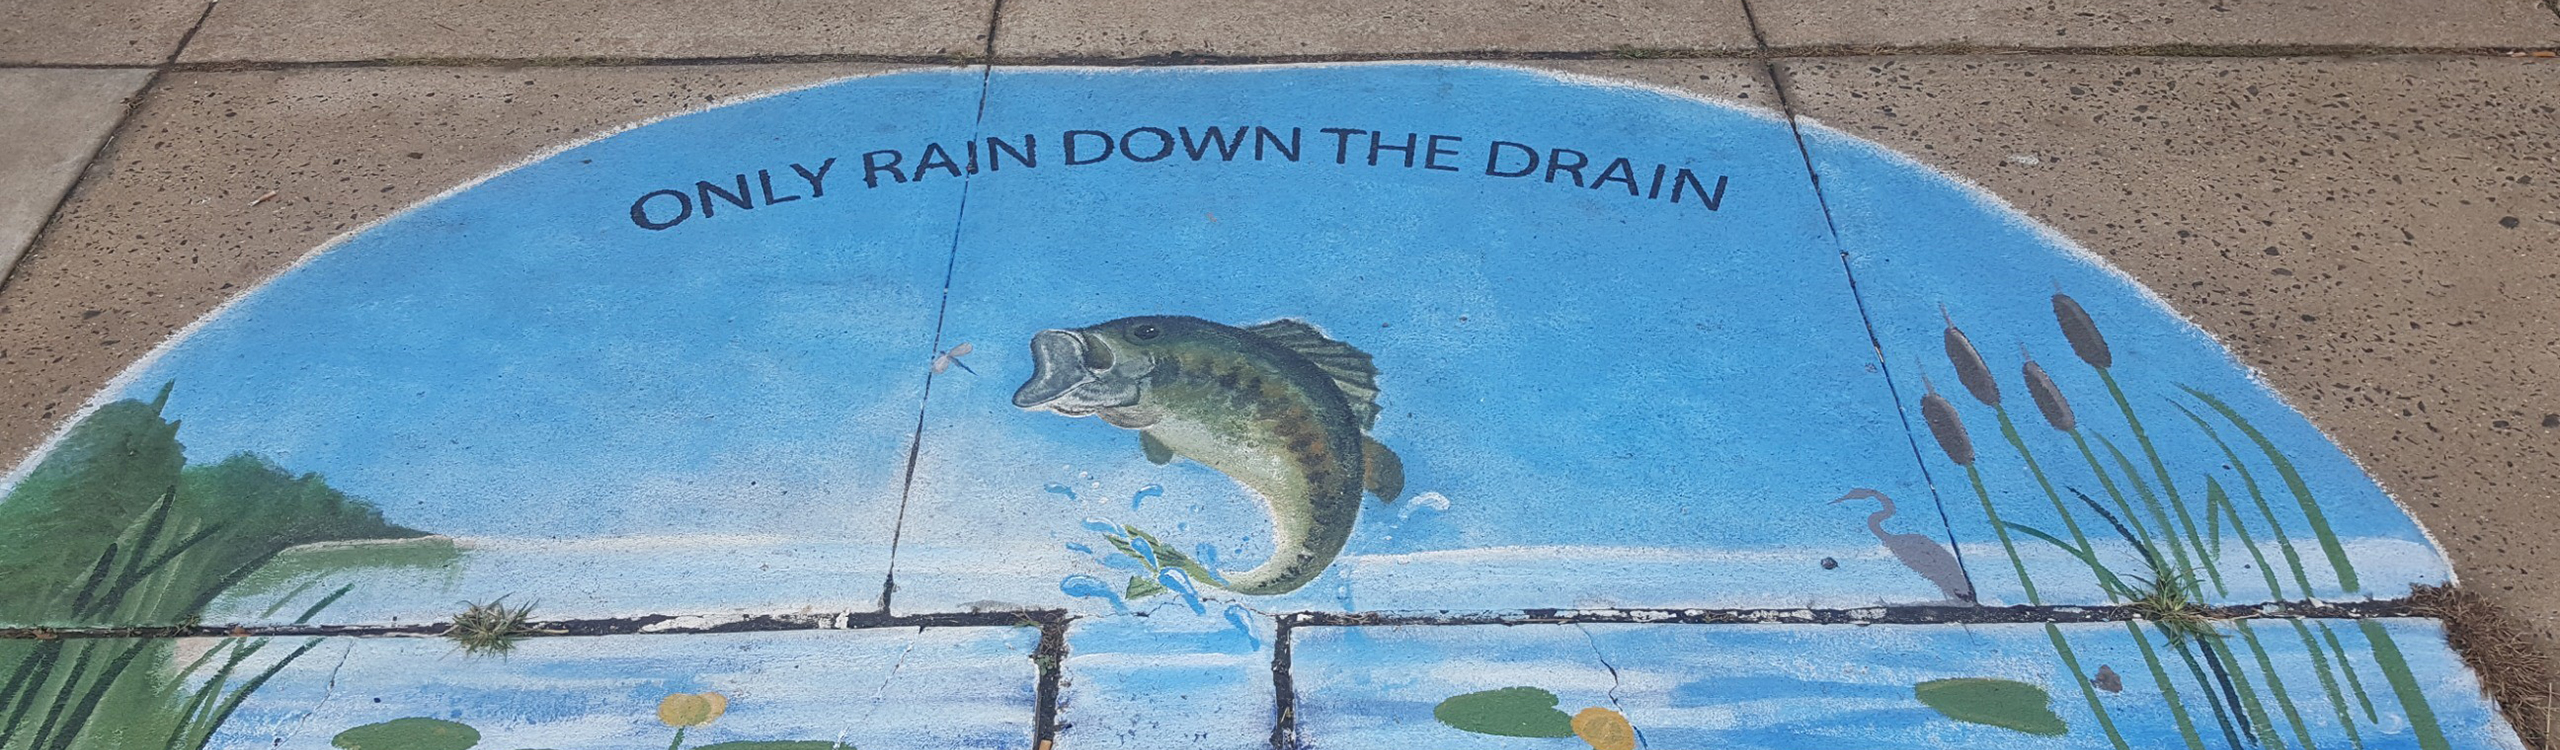 only rain down the drain